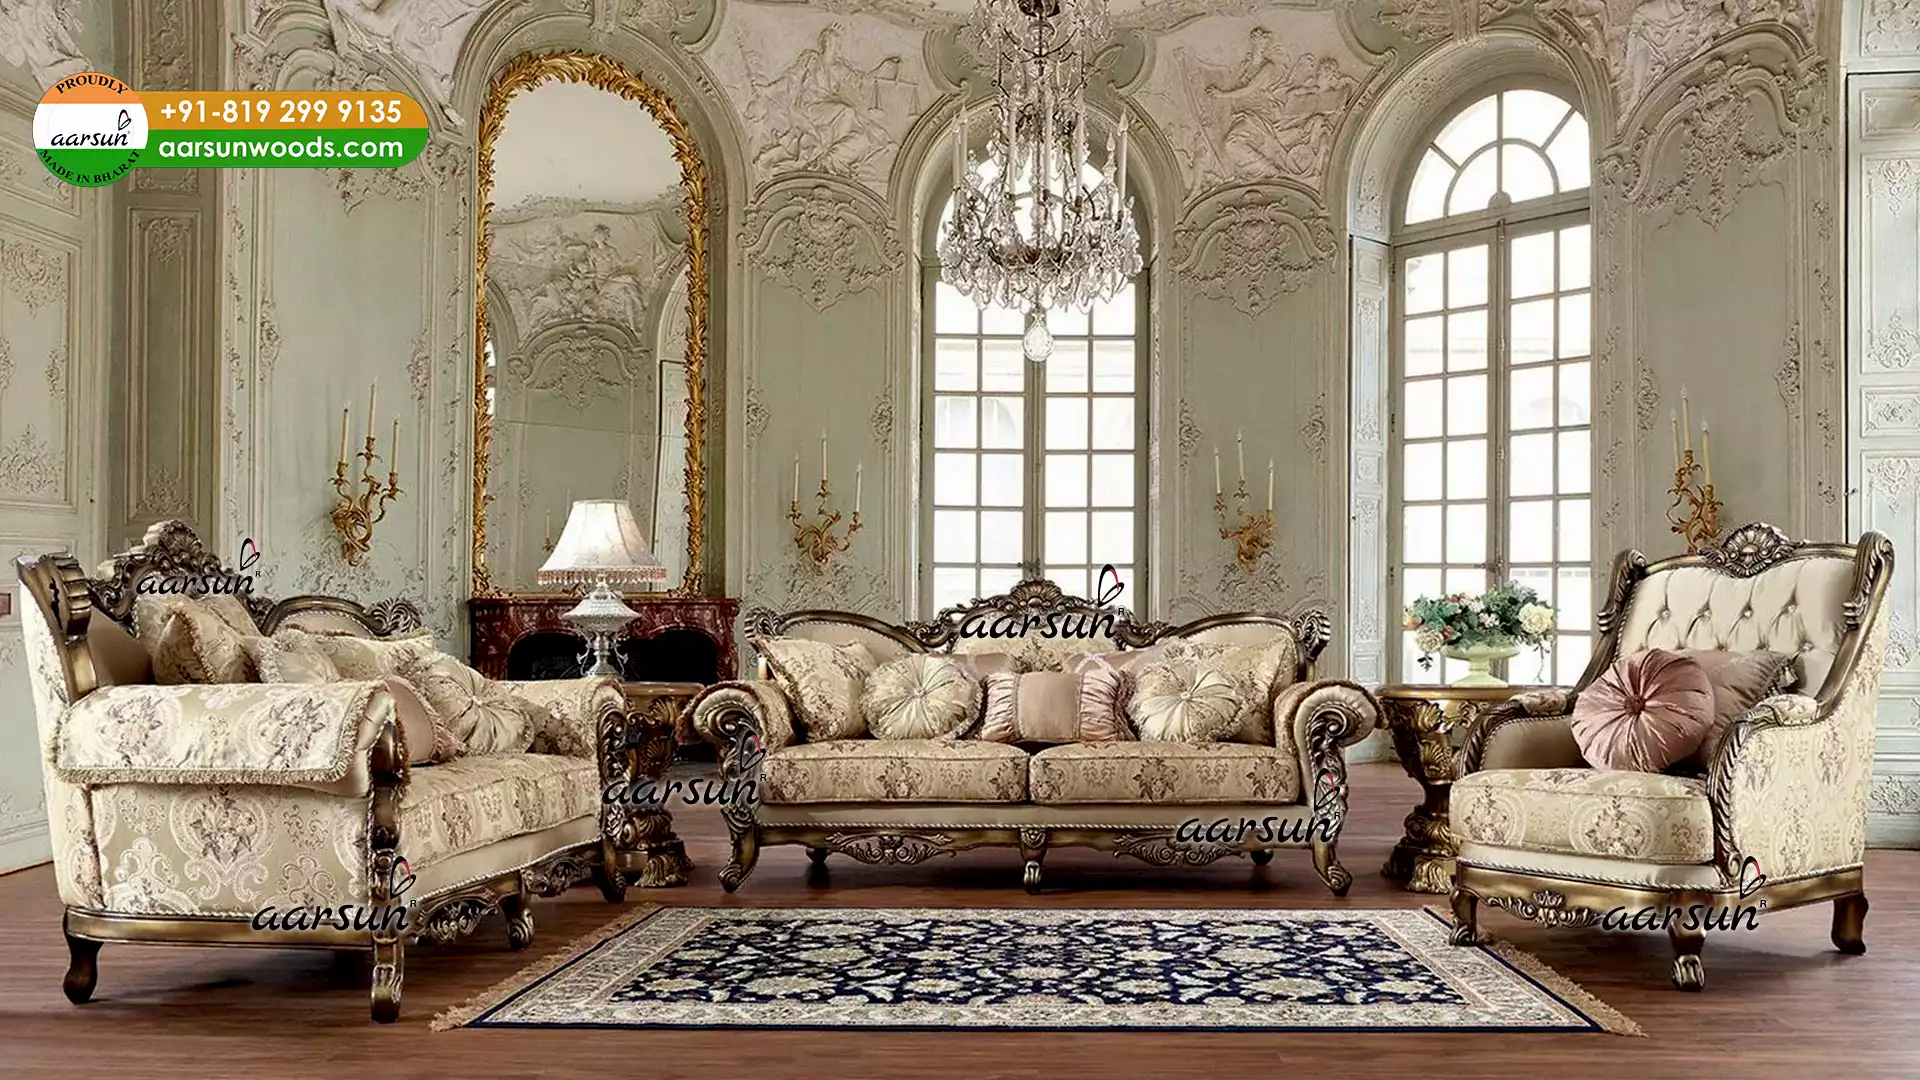 Exclusivo conxunto de sofás de luxo europeo Aspecto frontal